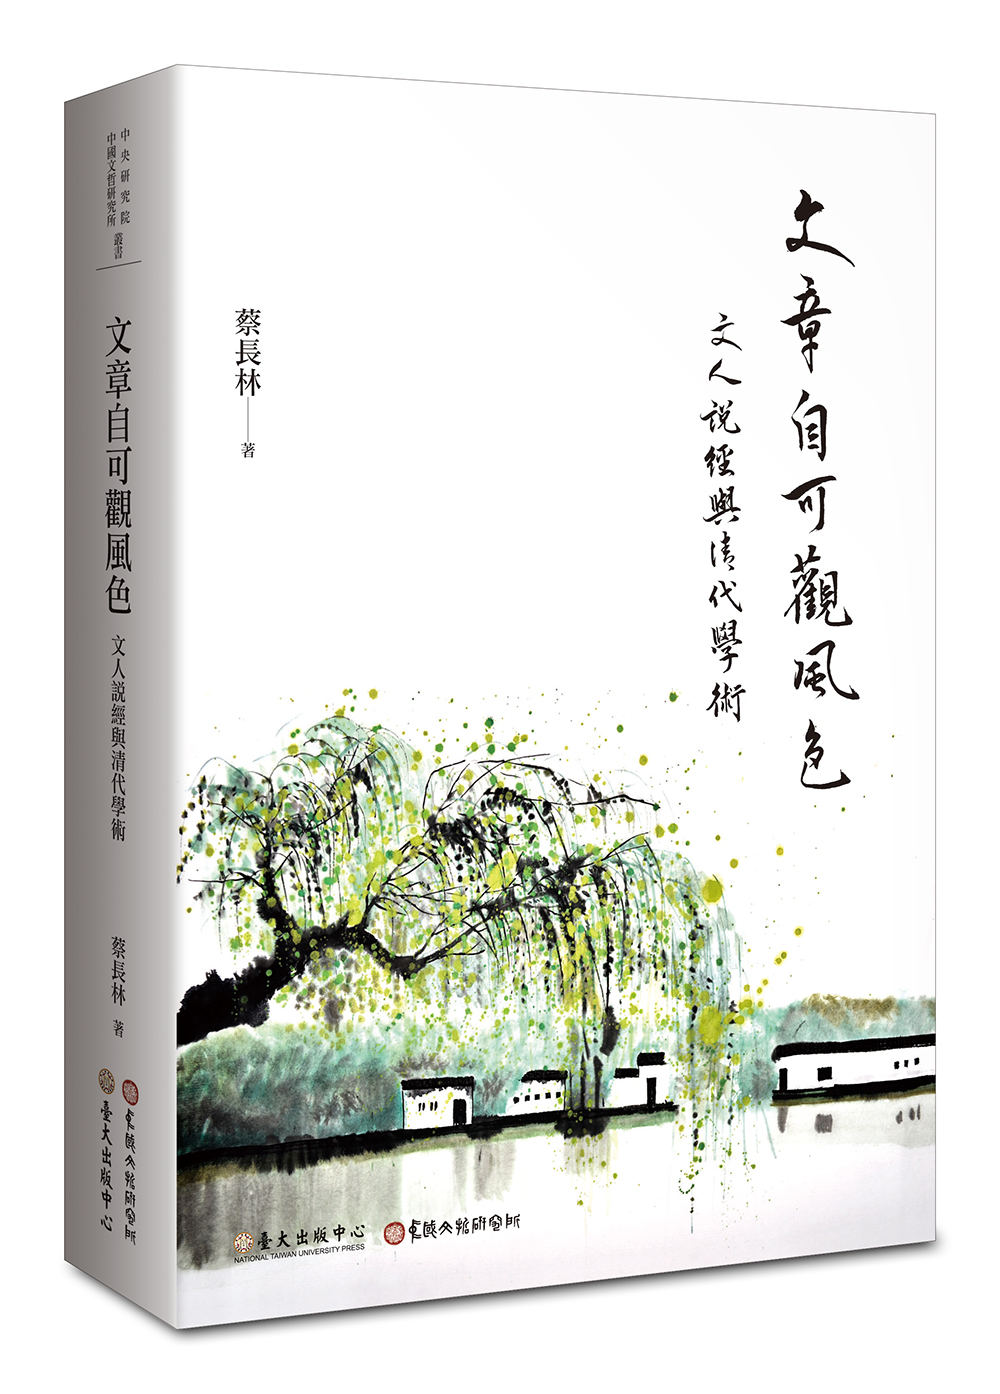 New Landscapes on ArticIes: Literators’Confucian Classics and Academics Development during Qing Dynasty